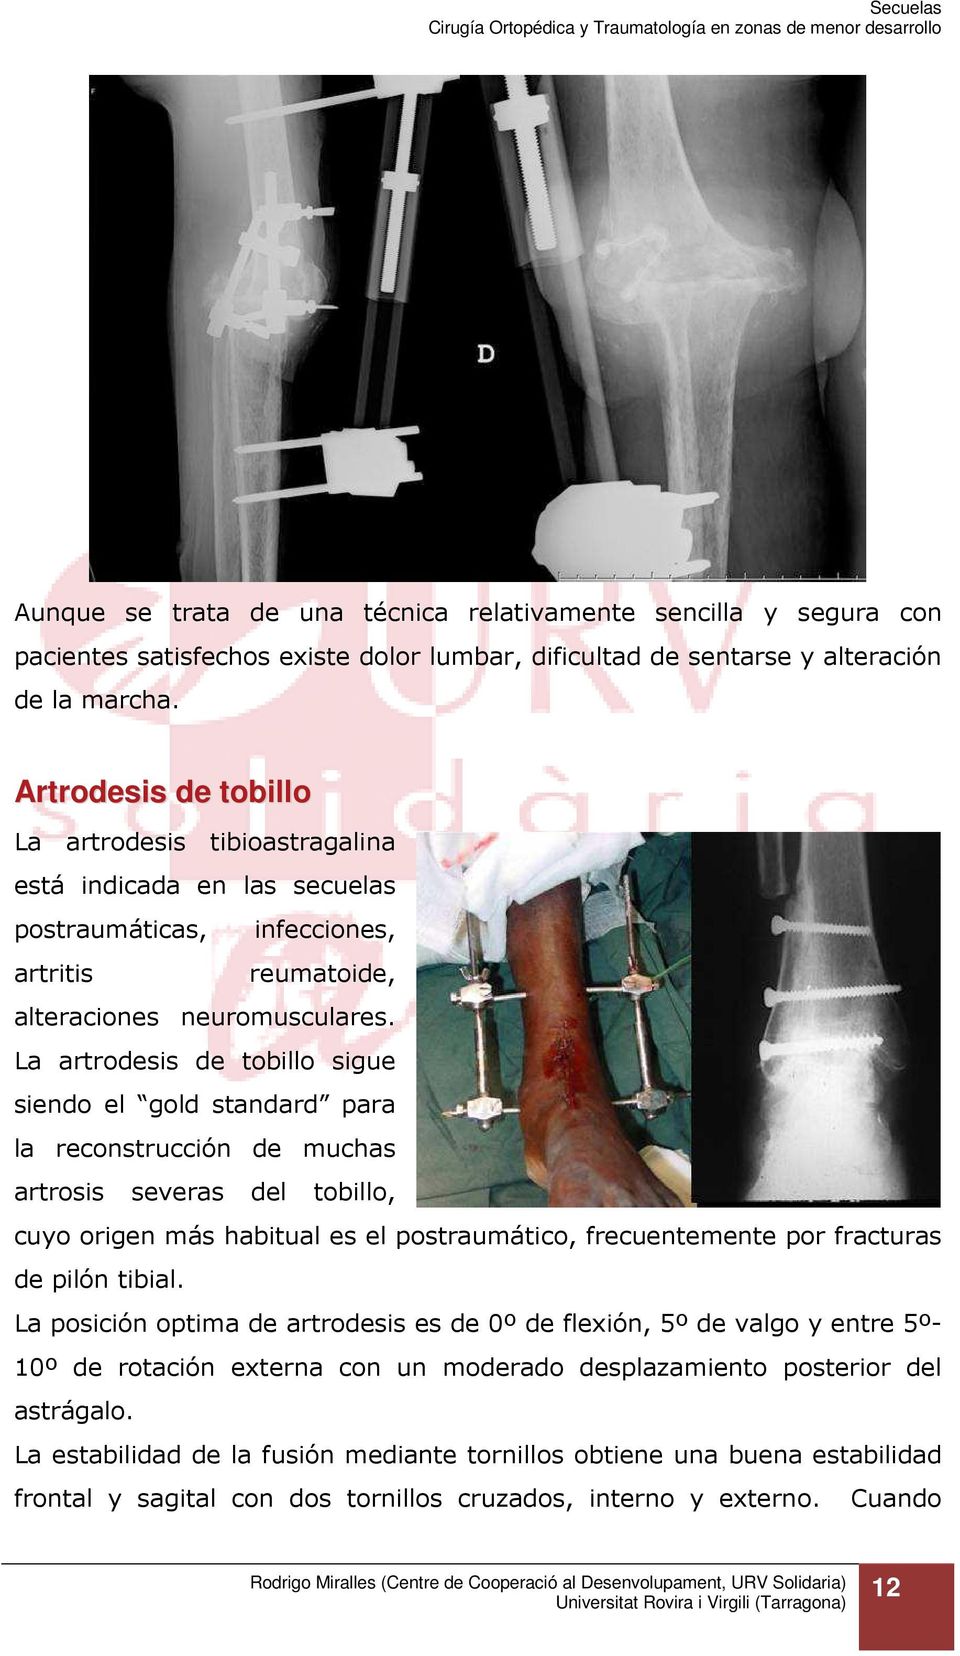 La artrodesis de tobillo sigue siendo el gold standard para la reconstrucción de muchas artrosis severas del tobillo, cuyo origen más habitual es el postraumático, frecuentemente por fracturas de